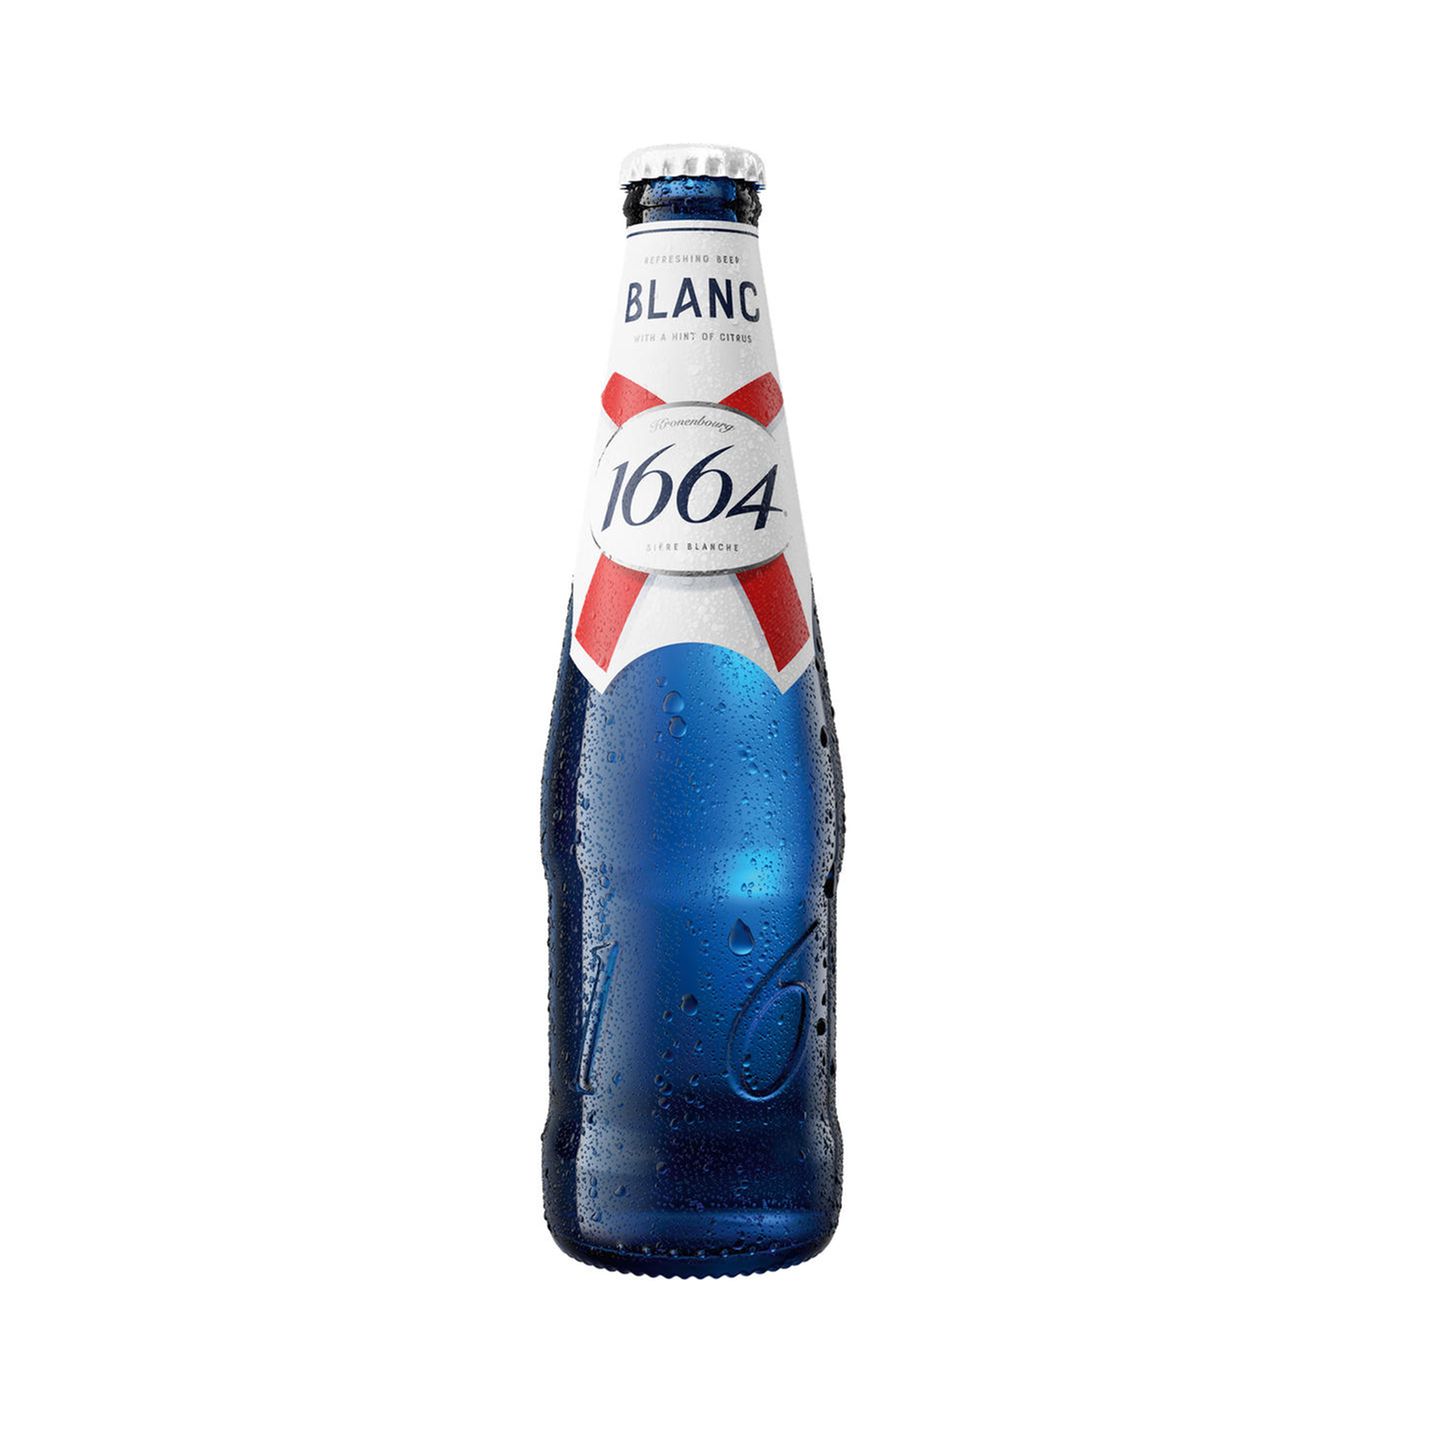 Wer mich kennt, weiß, dass ich eigentlich nicht der größte Bierfan bin. 1664 Blanc hat dennoch mein Herz im Sturm erobert, und das nicht nur wegen der stylischen blauen Flasche. Das Bier begeistert mit einer erfrischenden Citrus-Note, das es zum perfekten Drink für warme Sommerabende macht. Hannah, Mode- und Beautyredakteurin